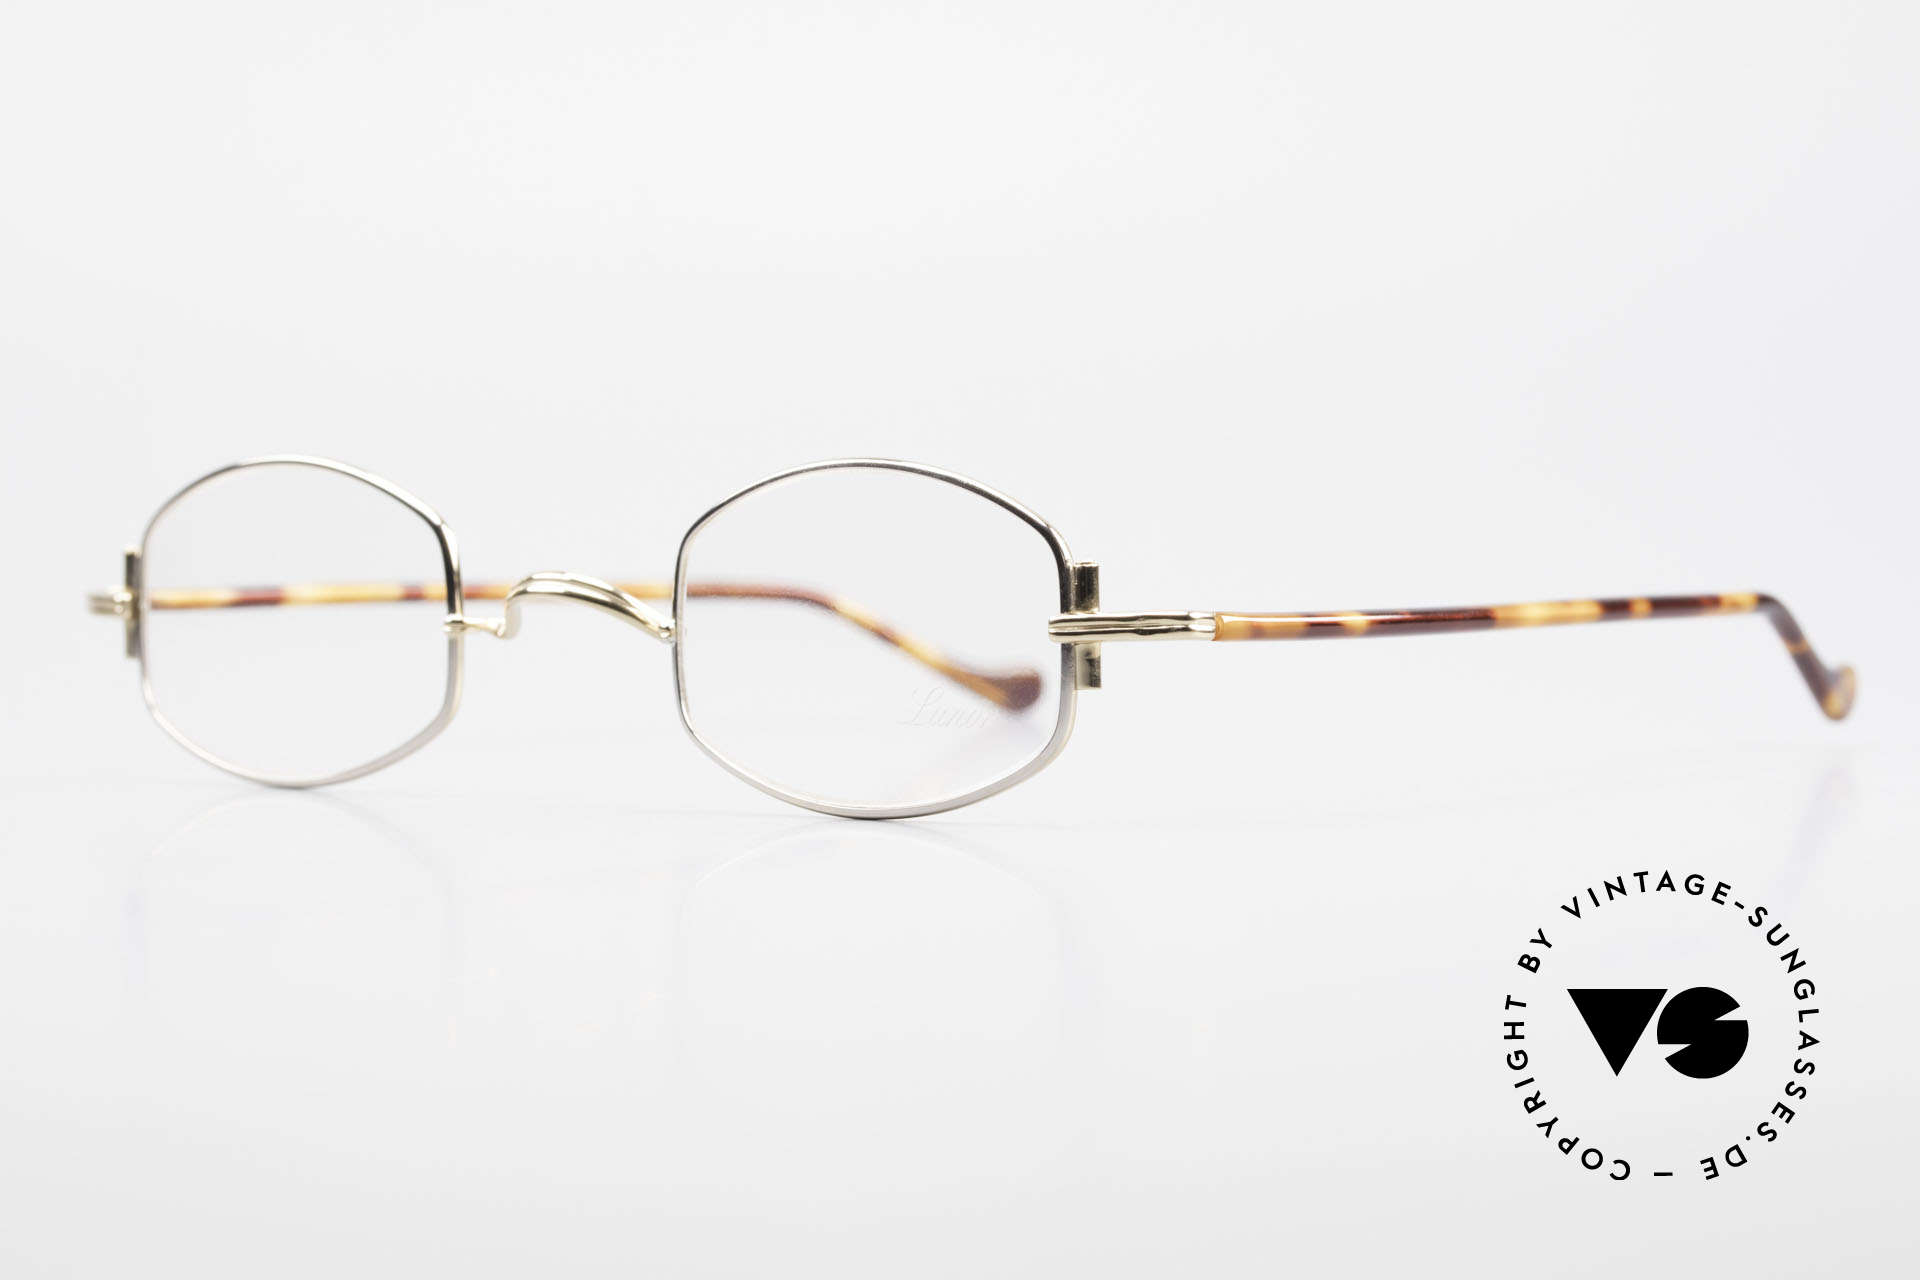 Lunor XA 03 Lunor Brille No Retro Vintage, bekannt für den W-Steg und die schlichten Formen, Passend für Herren und Damen